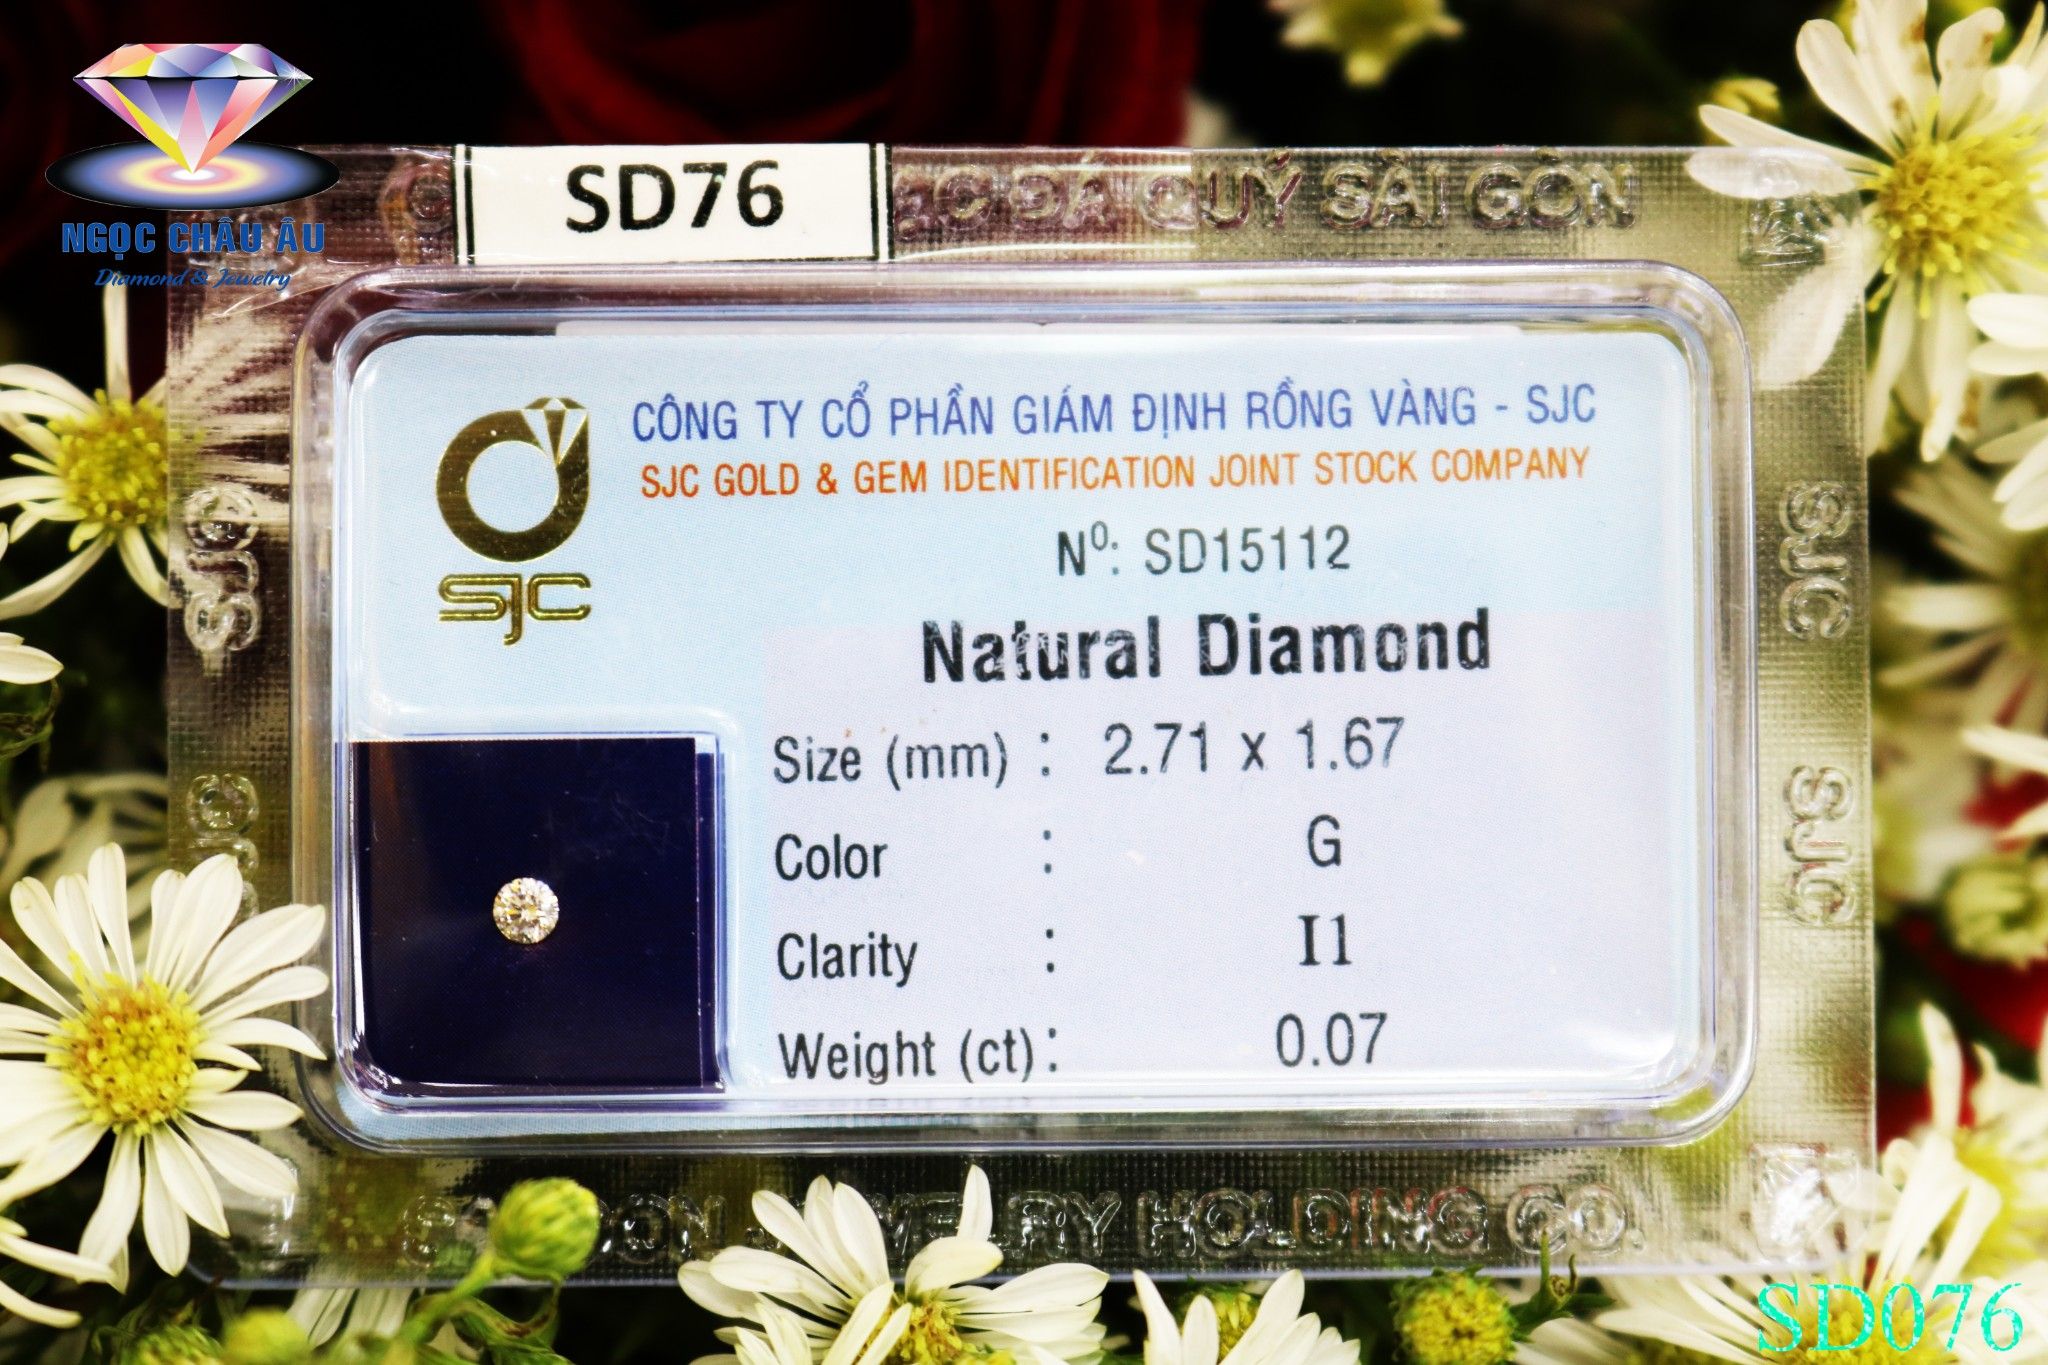  SD76-Kim Cương Thiên Nhiên 2.71x1.67mm; 0.07ct; G/I1 (SJC SD015112) 